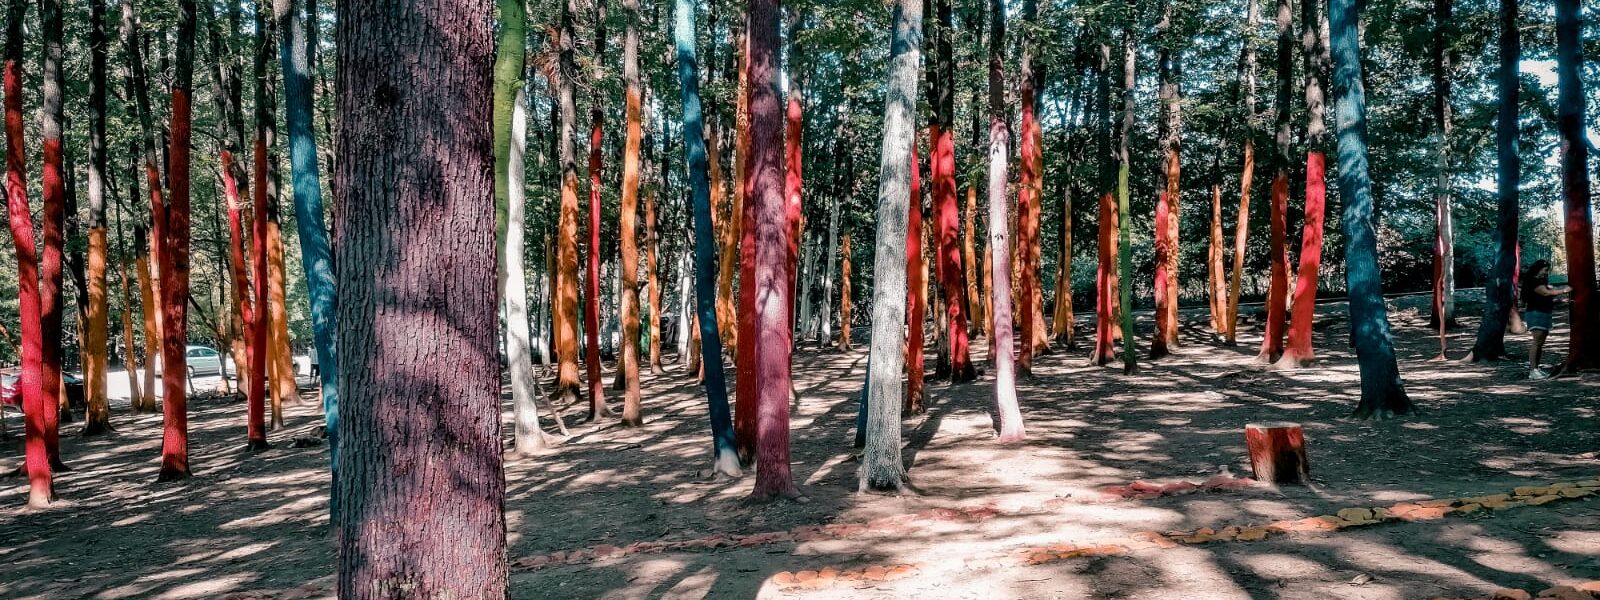 Pădurea colorată – cea mai nouă atracție turistică din Baia de Fier ...